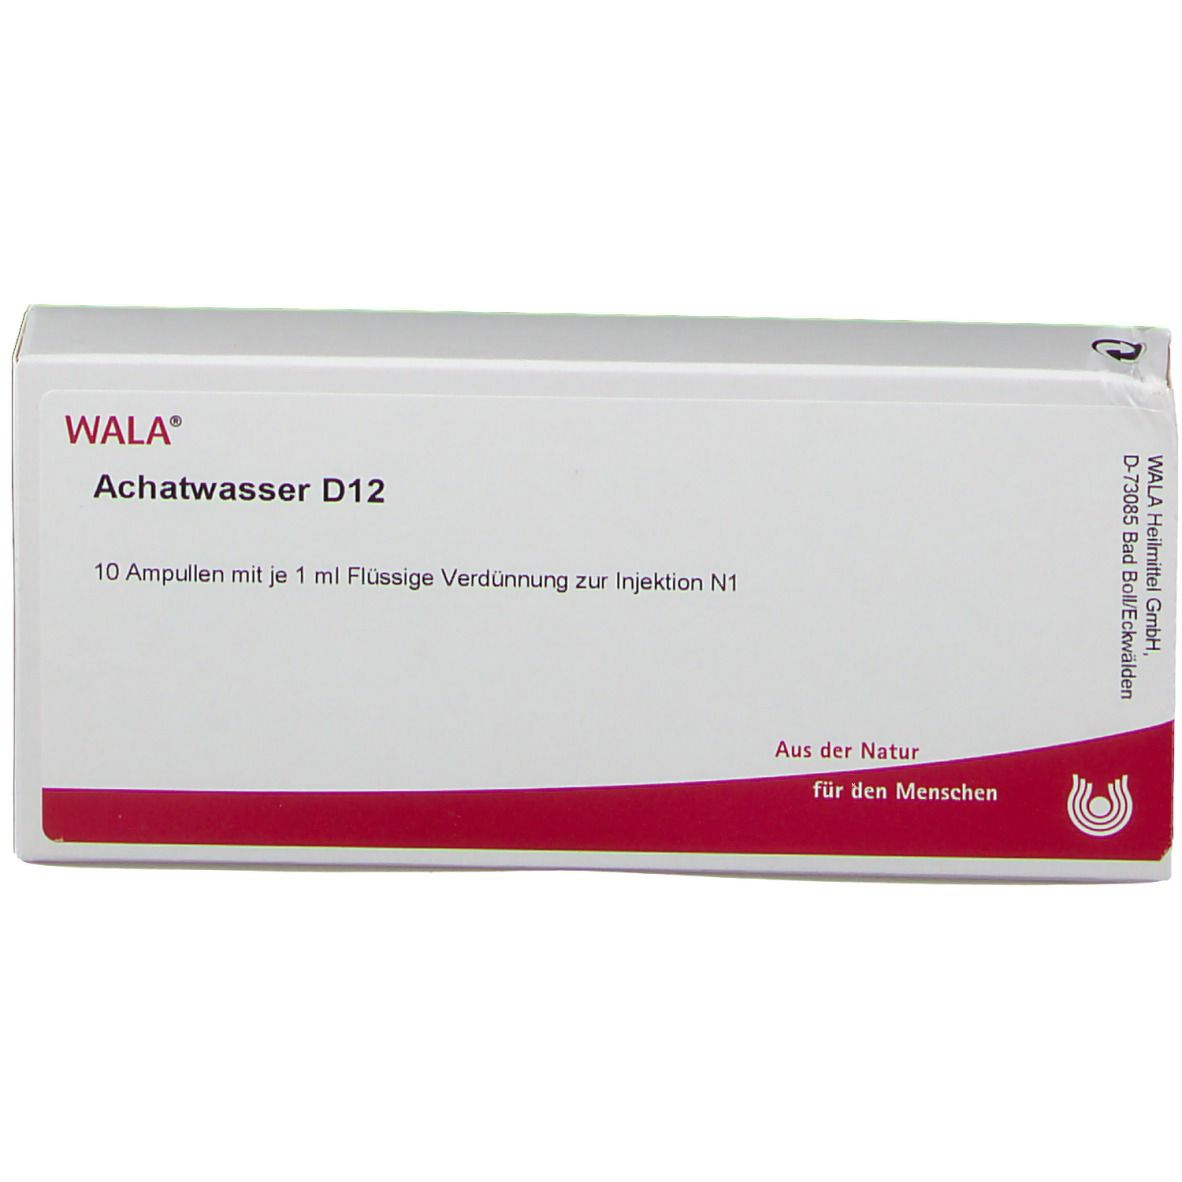 WALA® Achatwasser D 12